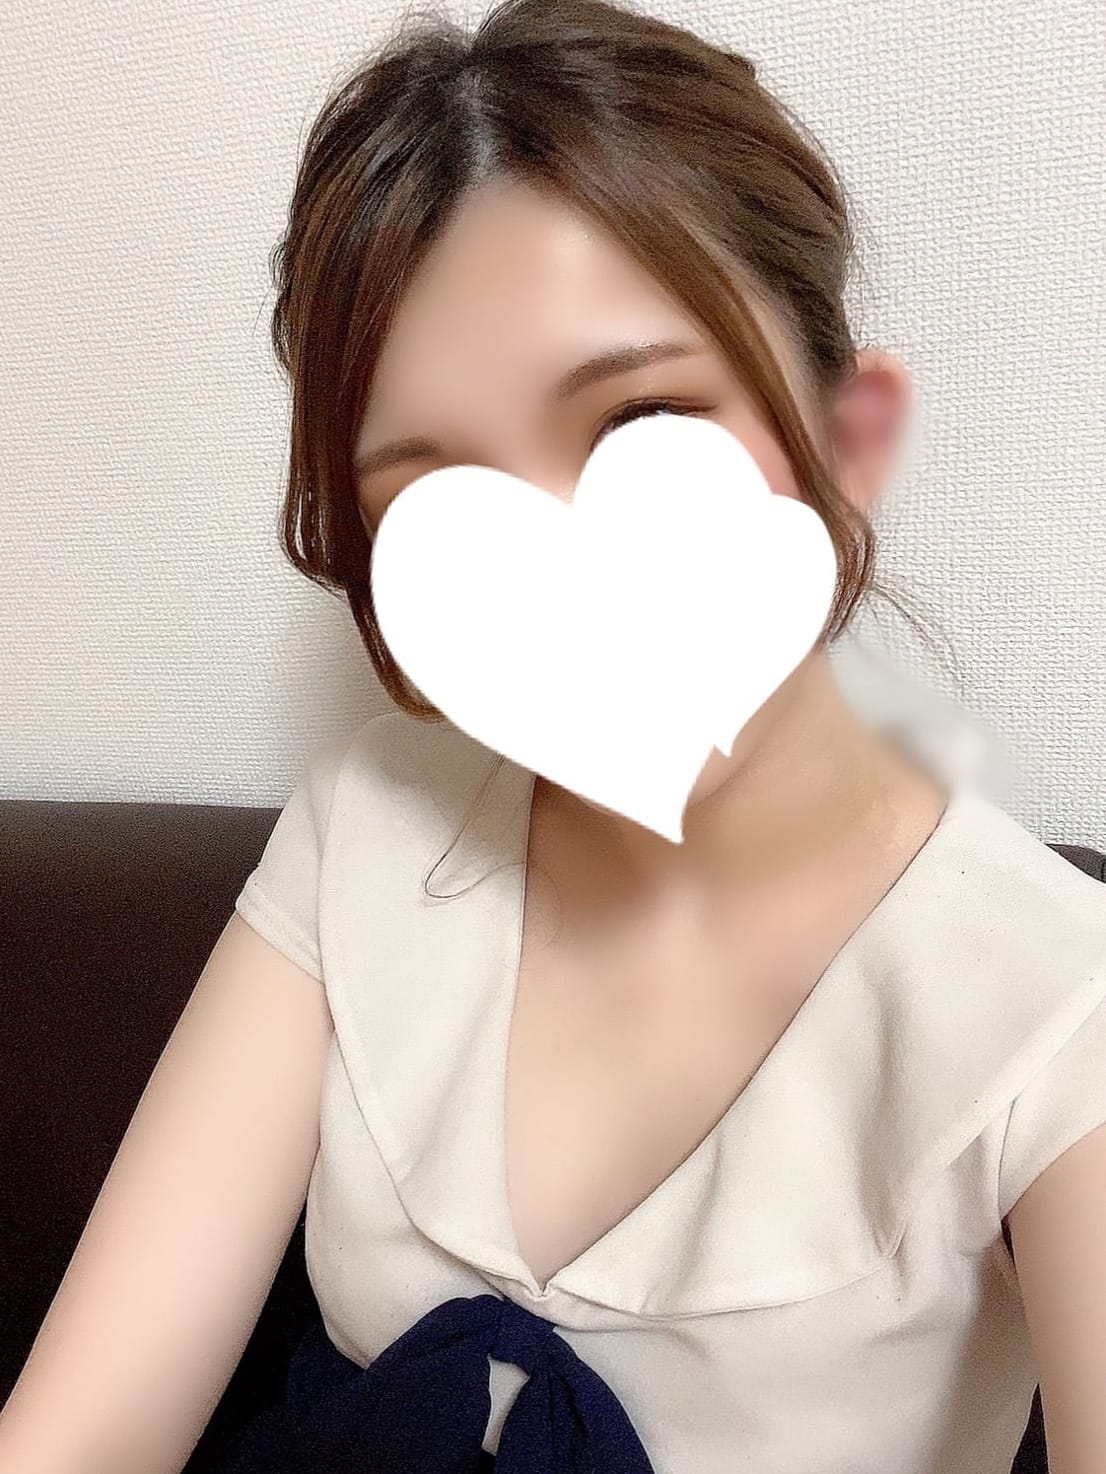 https://www.aromaesthe.co.jp/photo/lady/15330/gl.jpg